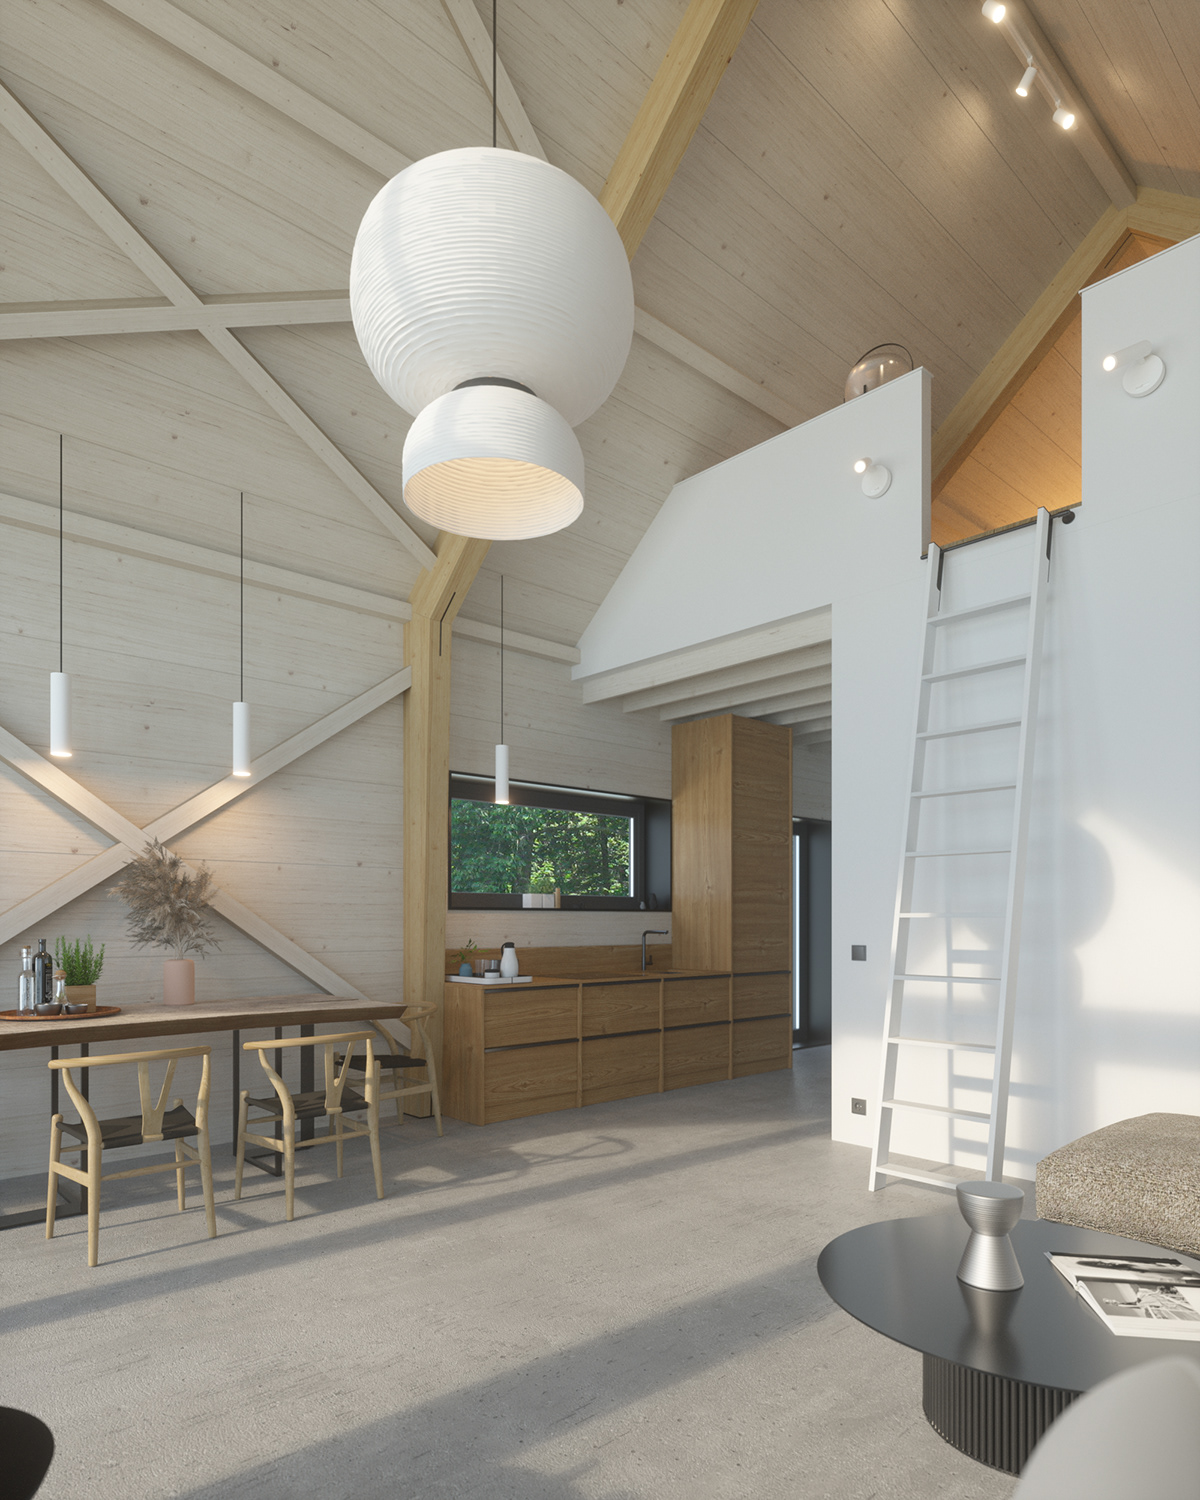 architecture Interior interior design  small house visualization archviz Render cabin corona render  CGI